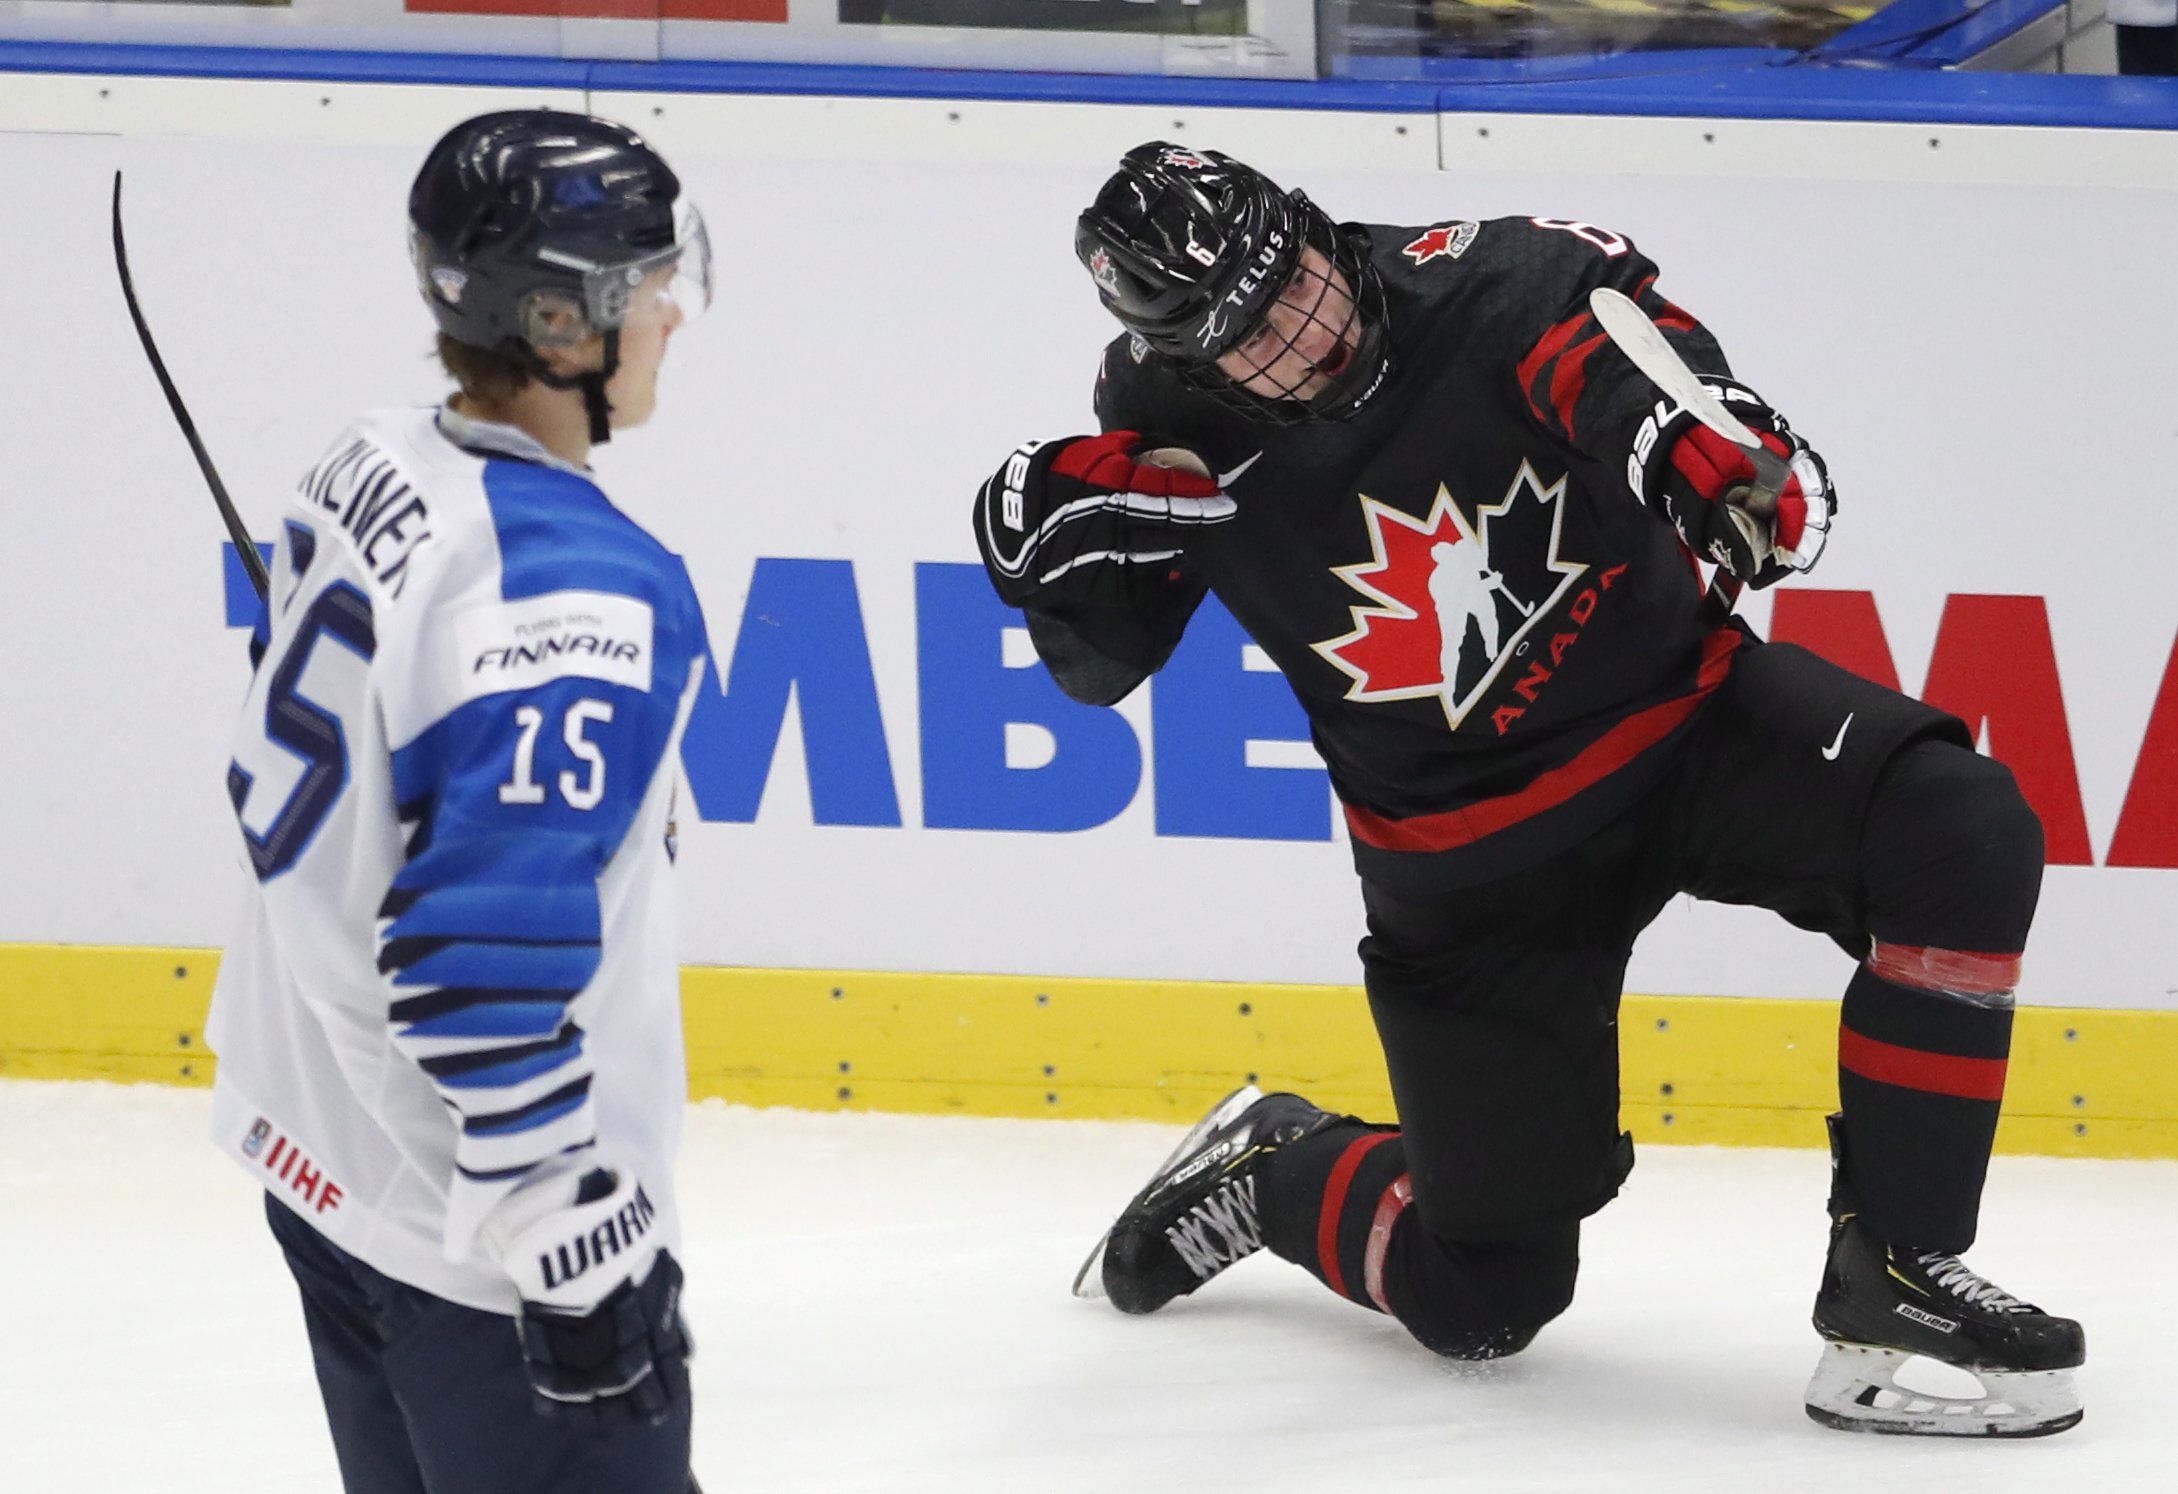 Un joueur du Canada célèbre un but devant un joueur de la Finlande.